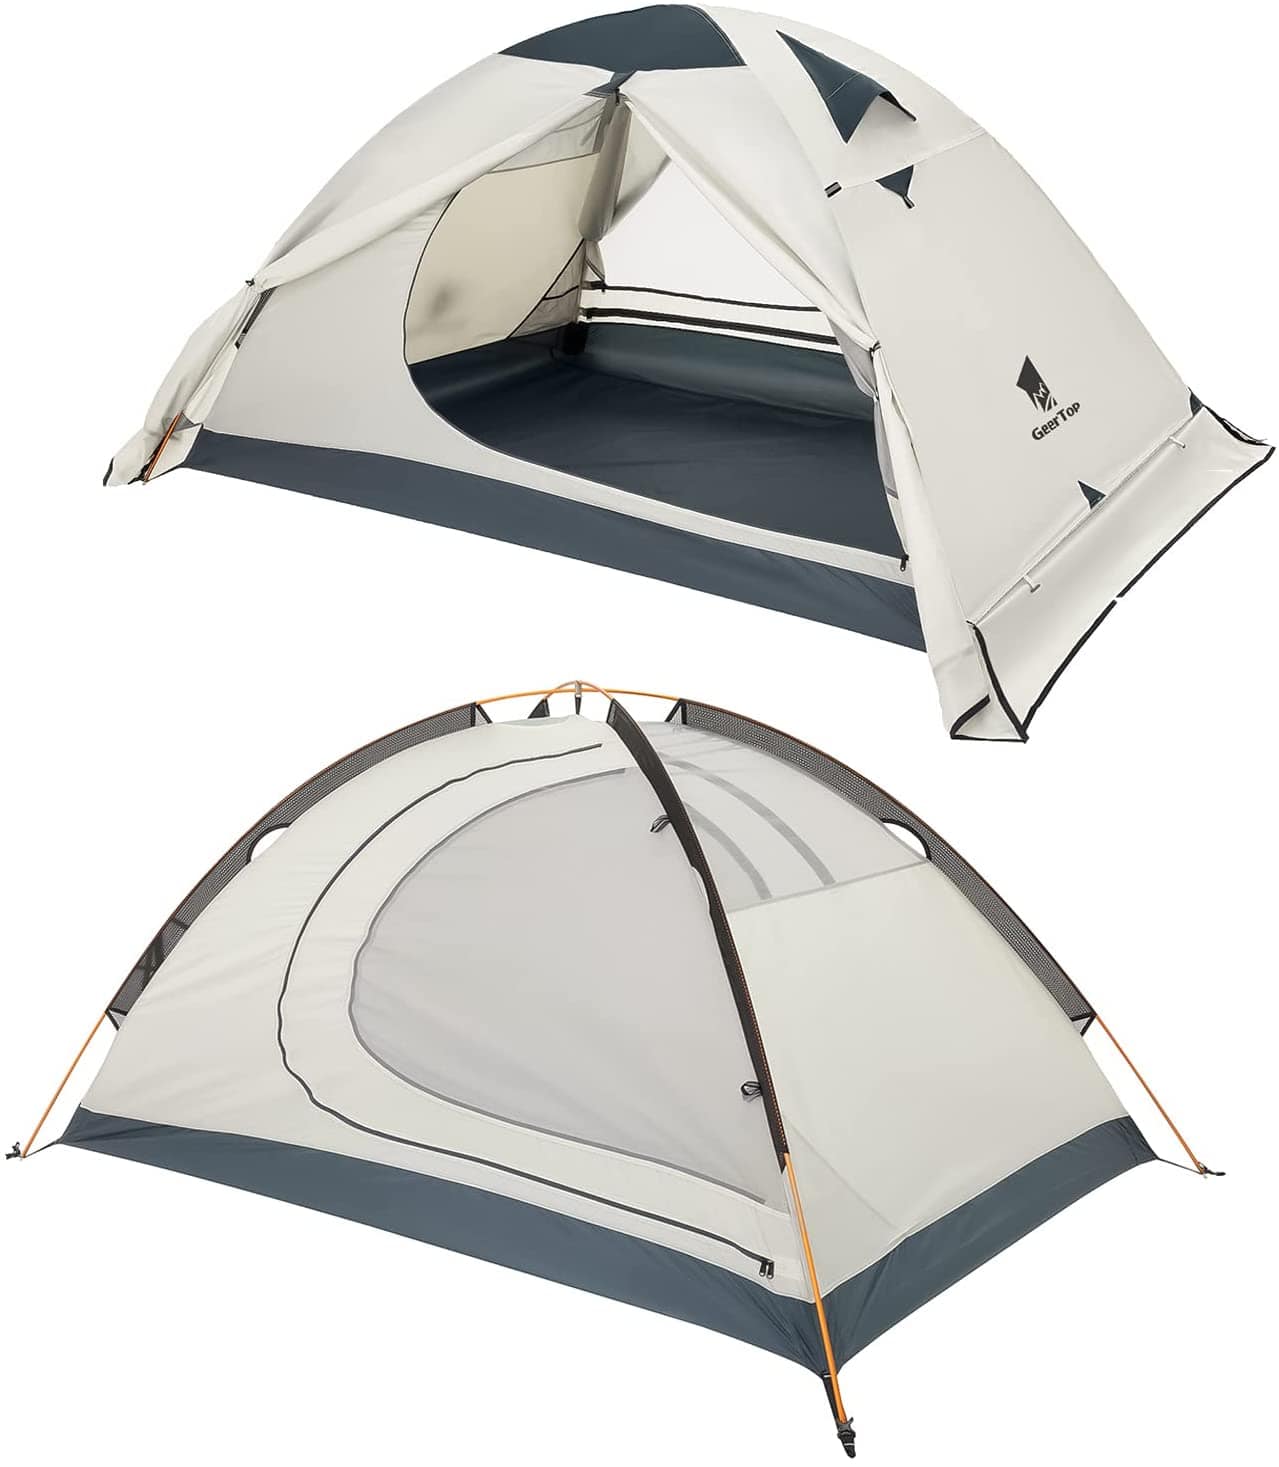 GeerTop 2 Person 4 Season Backpacking Camping Tent Waterproof lightweight